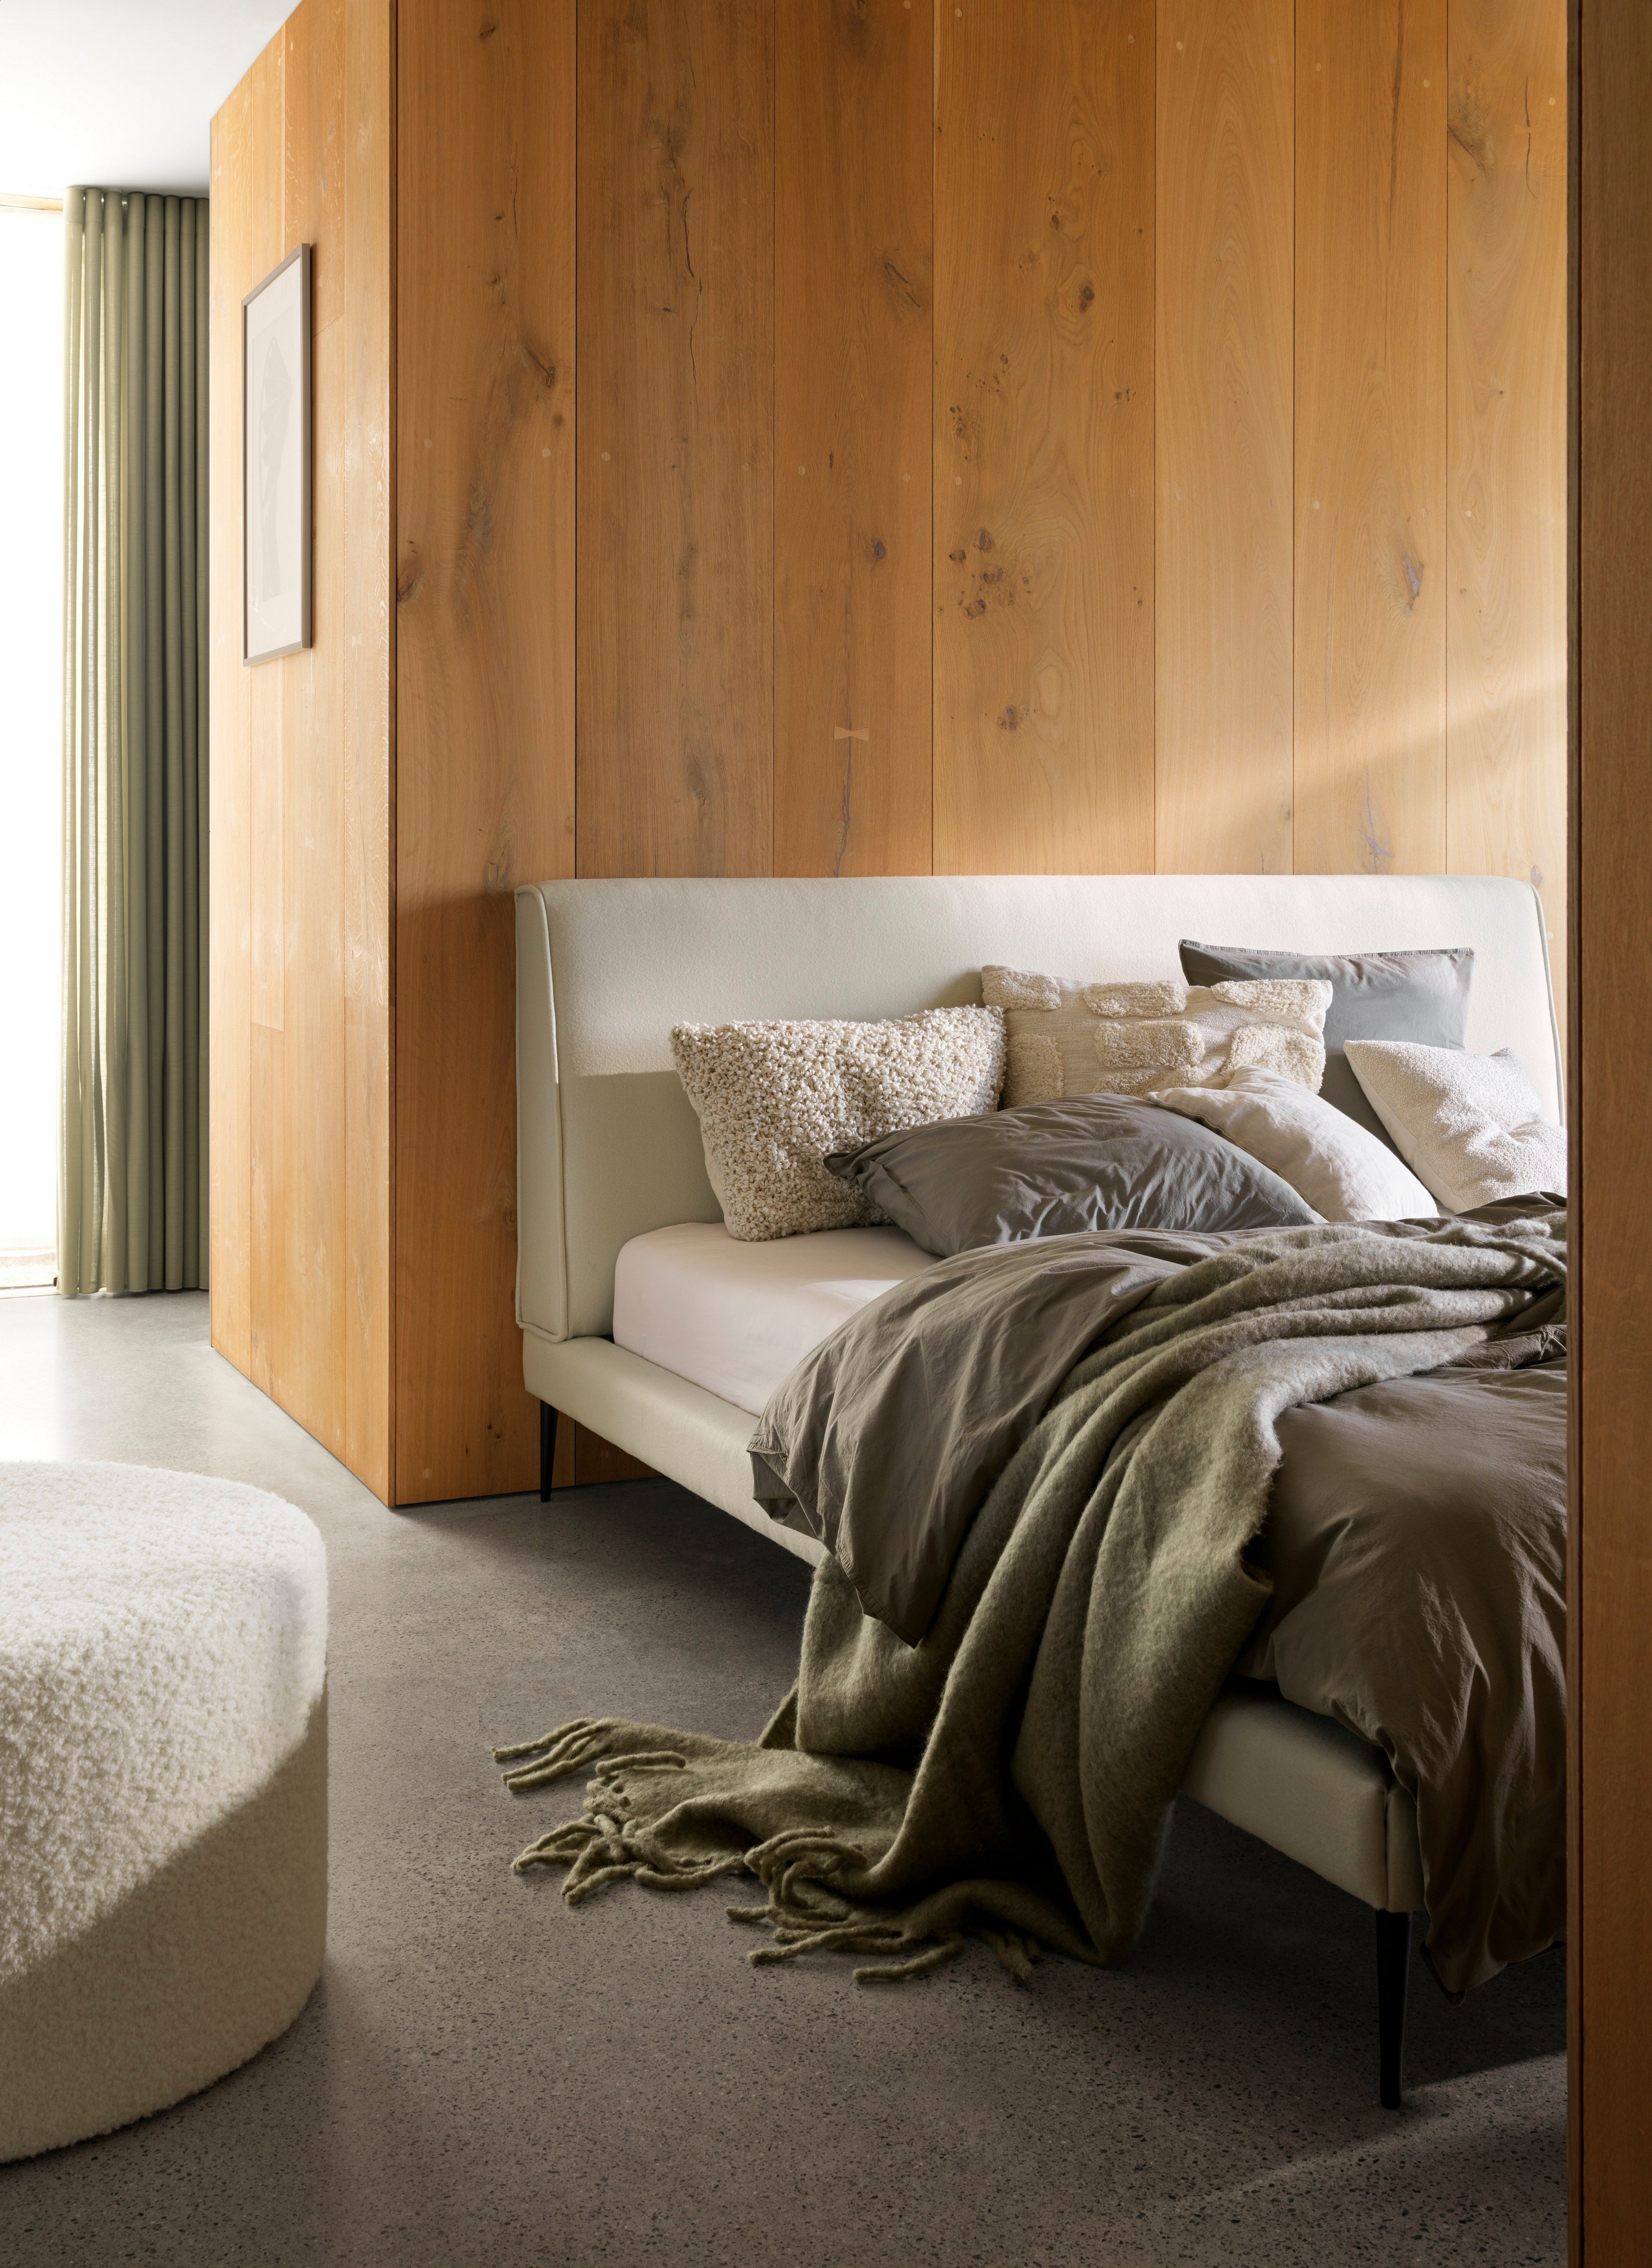 Útulná posteľ s plyšovými prikrývkami a vankúšmi pred drevenou stenou pri mäkkom osvetlení.